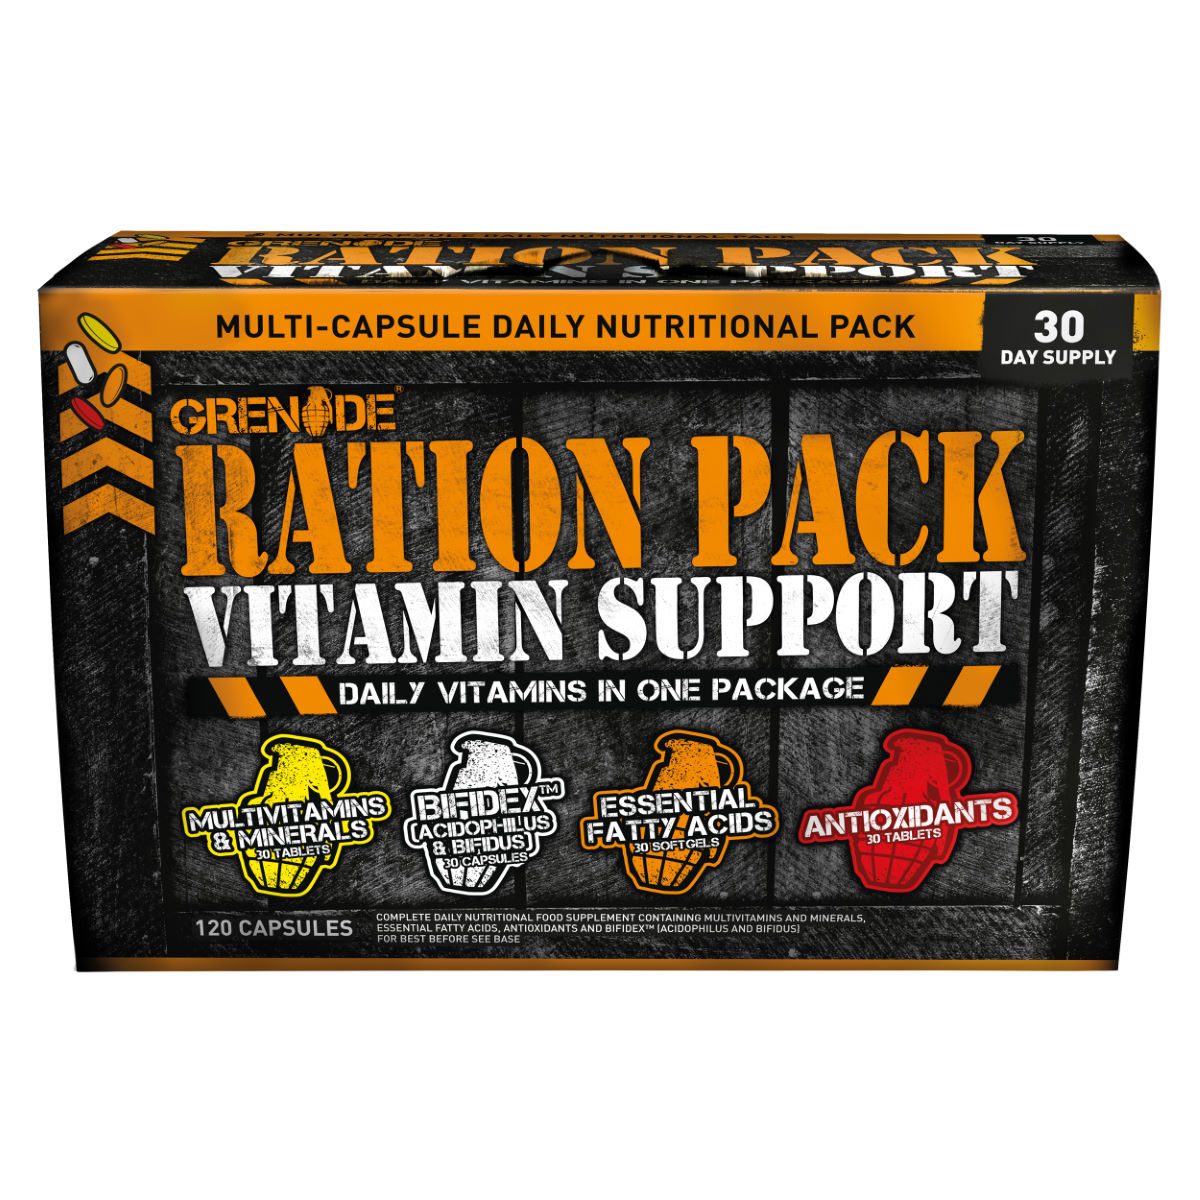 Suplemento vitamínico Grenade Ration Pack Vitamin Support (120 cápsulas) - Lotes de nutrición